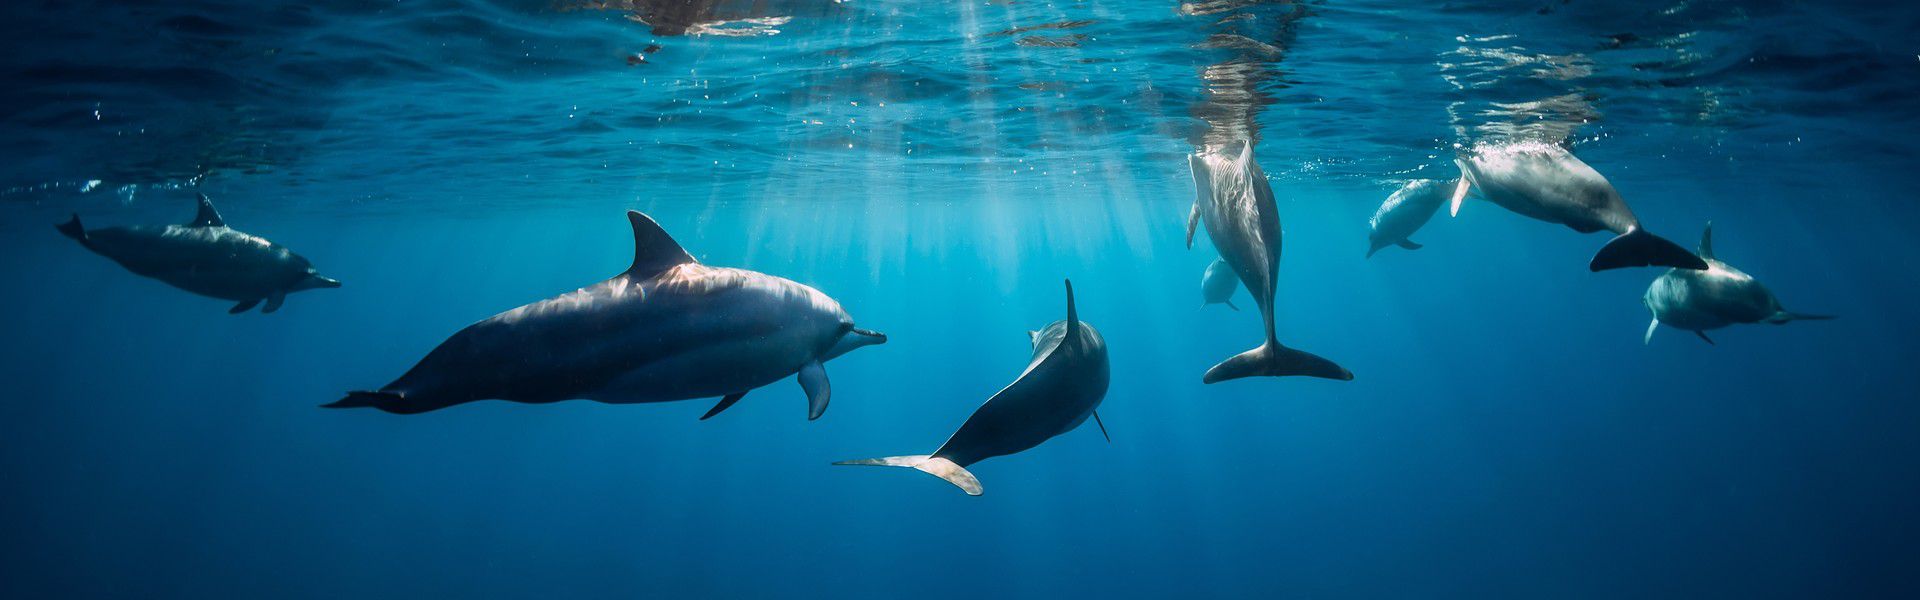 Les dauphins sont connus comme des animaux intelligents et amusants. Des scientifiques ont trouvé qu’ils peuvent forger des liens avec des humains et qu’ils les protègent souvent d’attaques de requins. Il y a plusieurs raisons pour aller à la rencontre de ces gentils mammifères marins. Les dauphins adorent l’eau tiède autour de Maurice, ce qui fait de l’île un endroit idéal pour nager avec eux. De plus, interagir avec eux dans leur habitat naturel garanti l’authenticité de l’expérience, car n’étant pas enfermés dans un aquarium, ils seront plus épanouis.